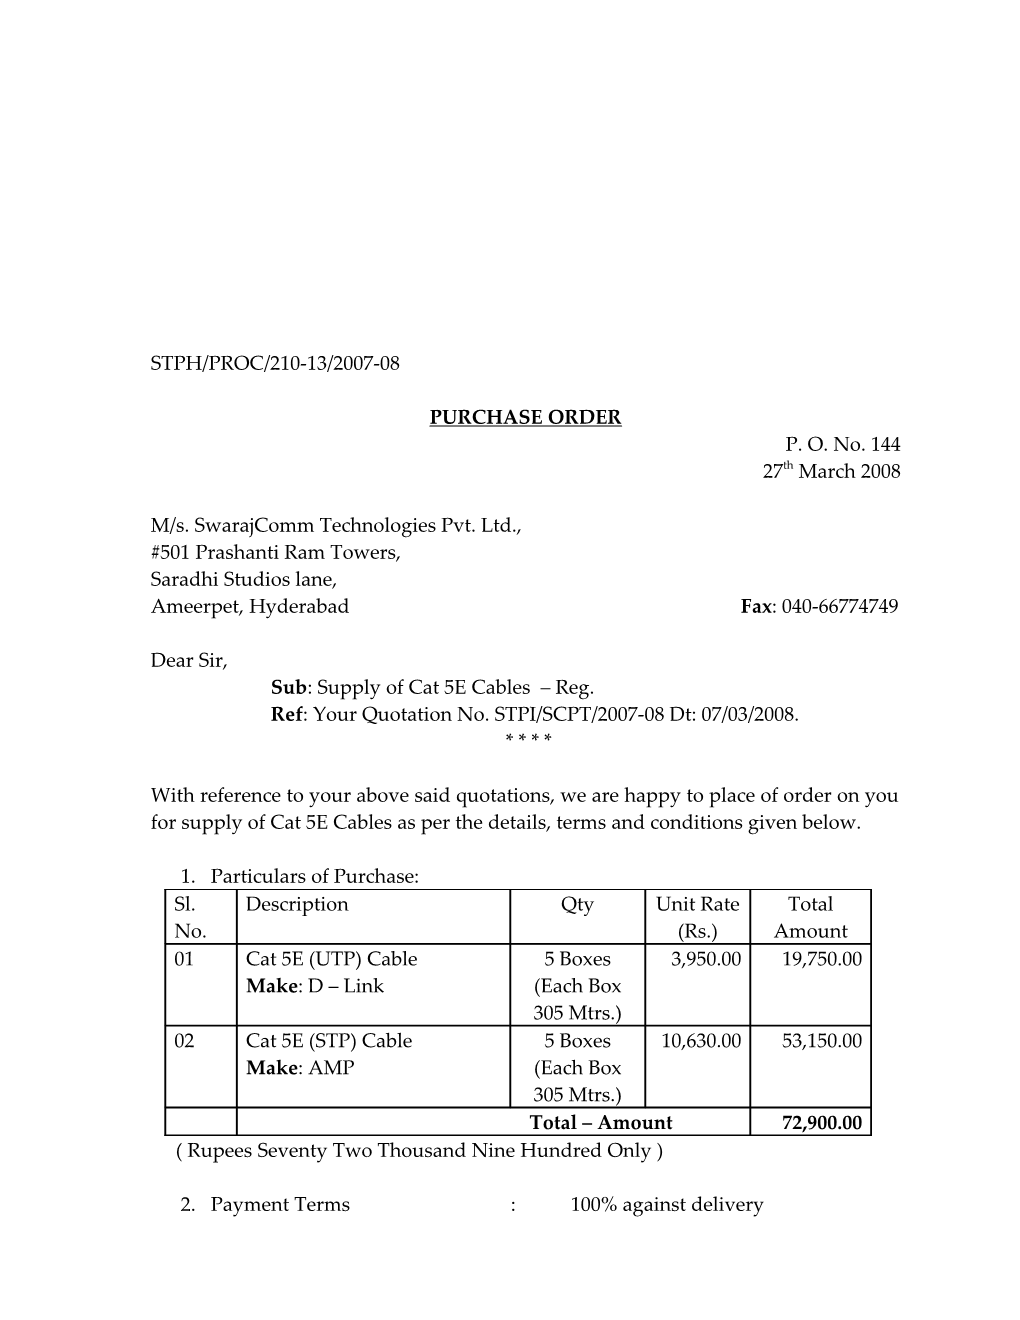 M/S. Swarajcomm Technologies Pvt. Ltd